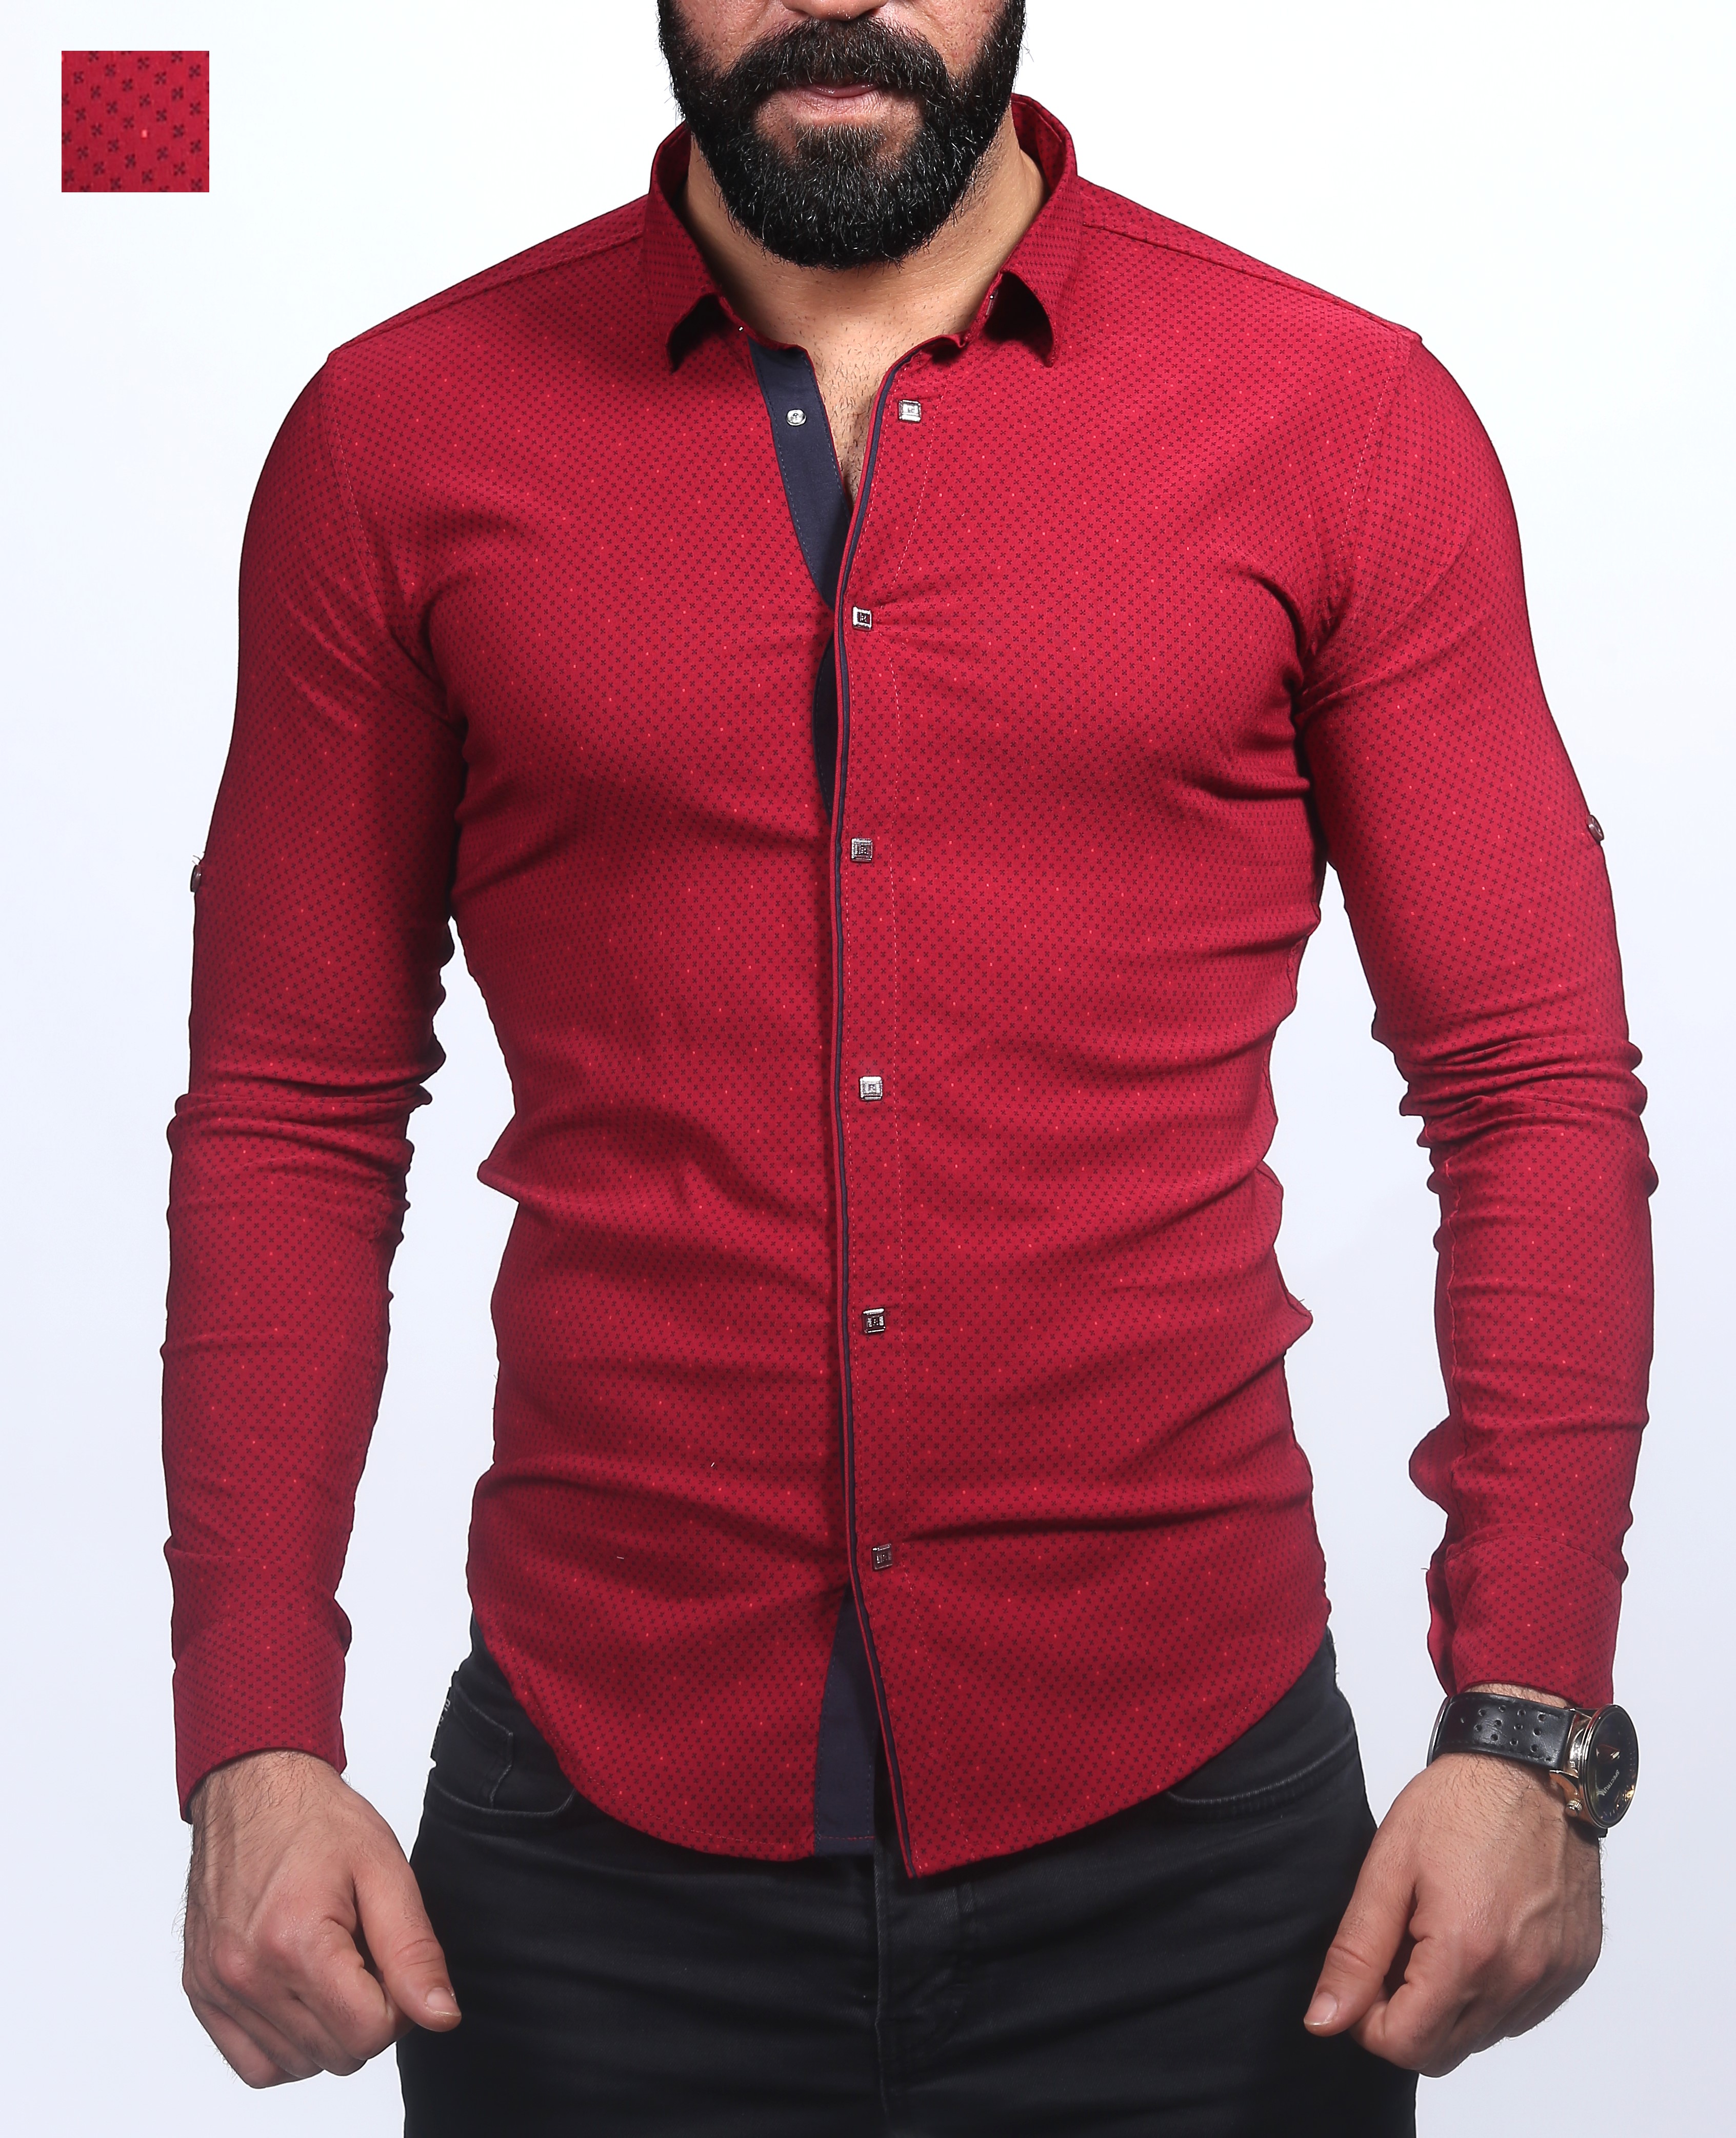 Купить турецкую рубашку. Турецкие рубашки мужские. Рубашка мужская красная. Мужчина в красной рубашке. Турецкие рубашки мужской одежды.